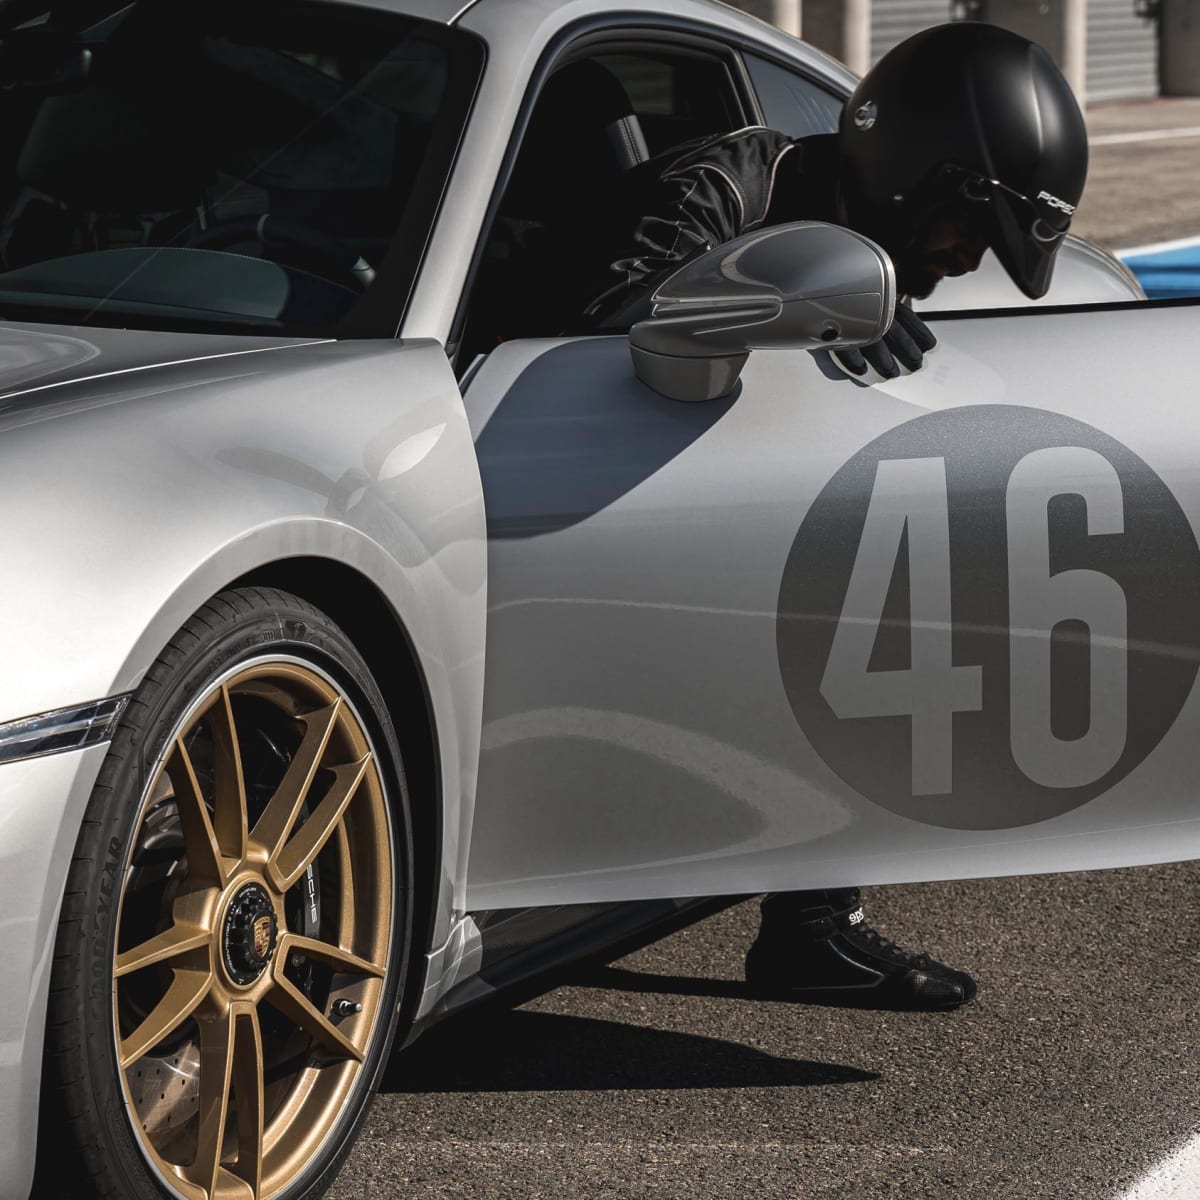 911 Carrera GTS Le Mans Centenaire Edition honours 100th